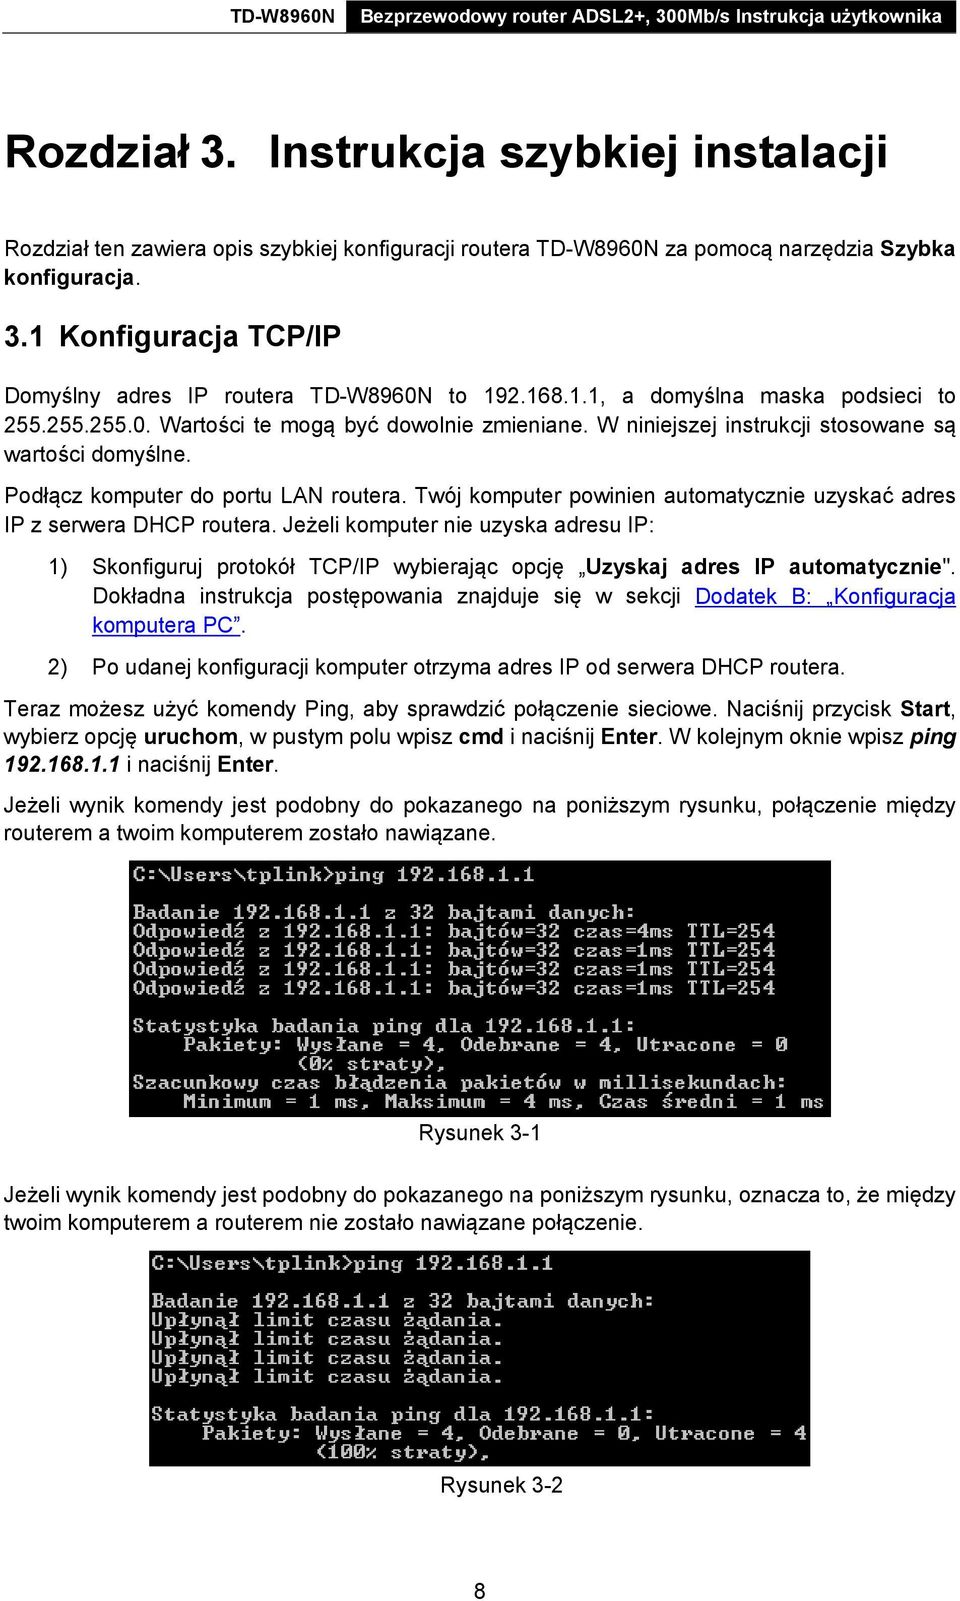 Twój komputer powinien automatycznie uzyskać adres IP z serwera DHCP routera. Jeżeli komputer nie uzyska adresu IP: 1) Skonfiguruj protokół TCP/IP wybierając opcję Uzyskaj adres IP automatycznie".